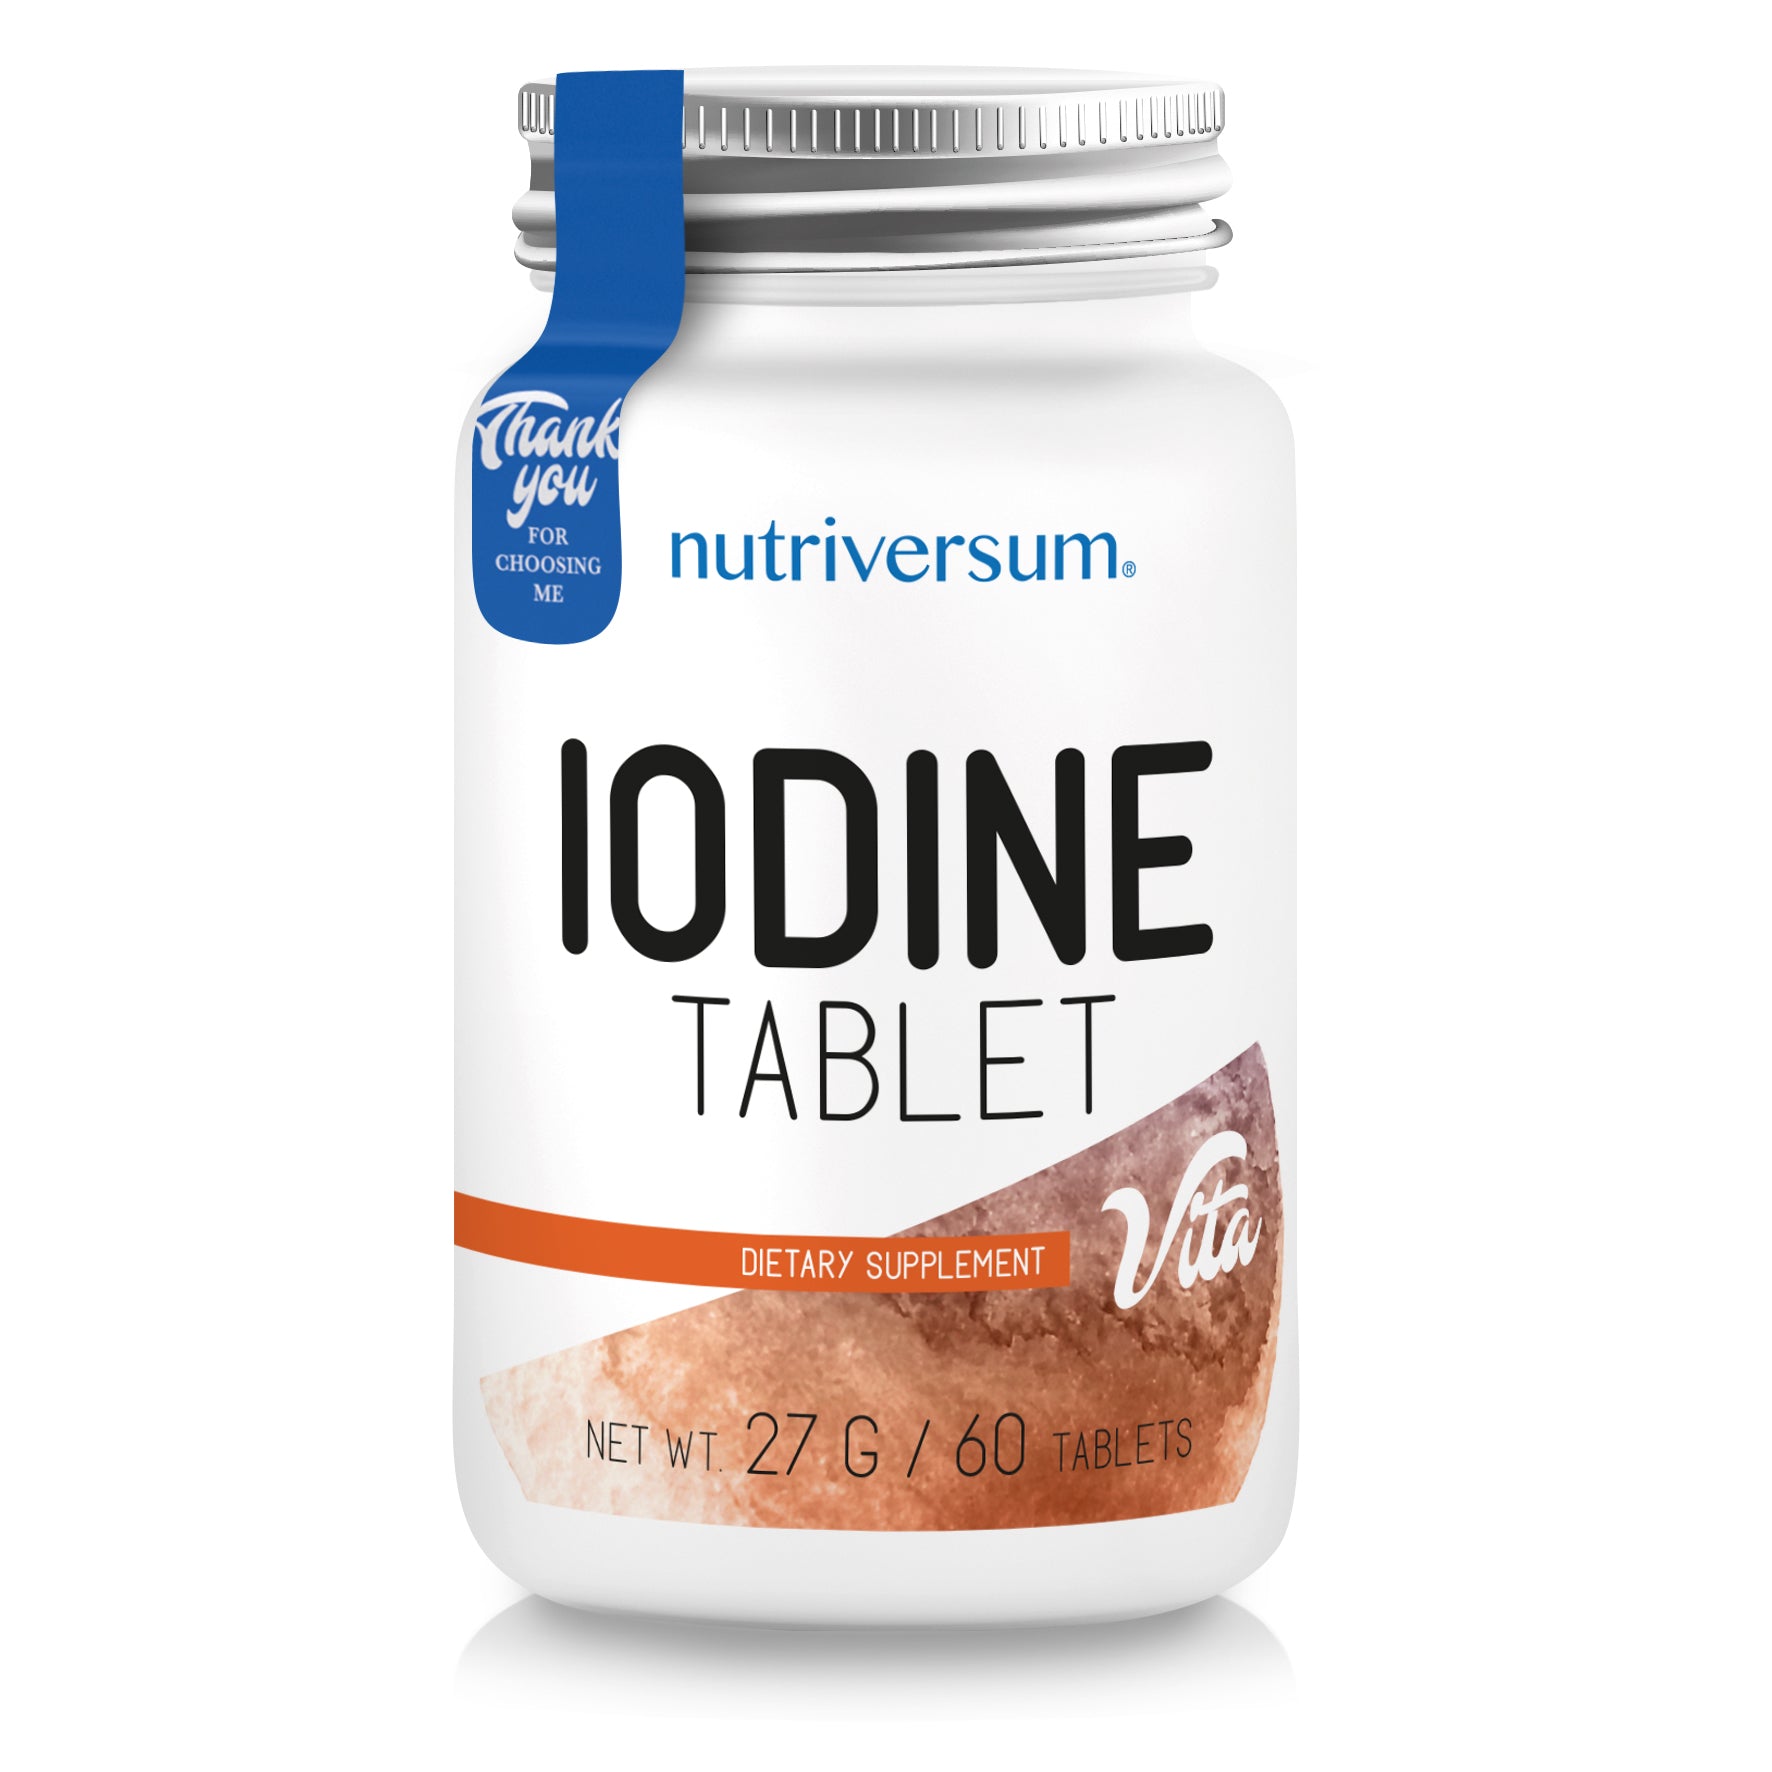 VITA - Iodine